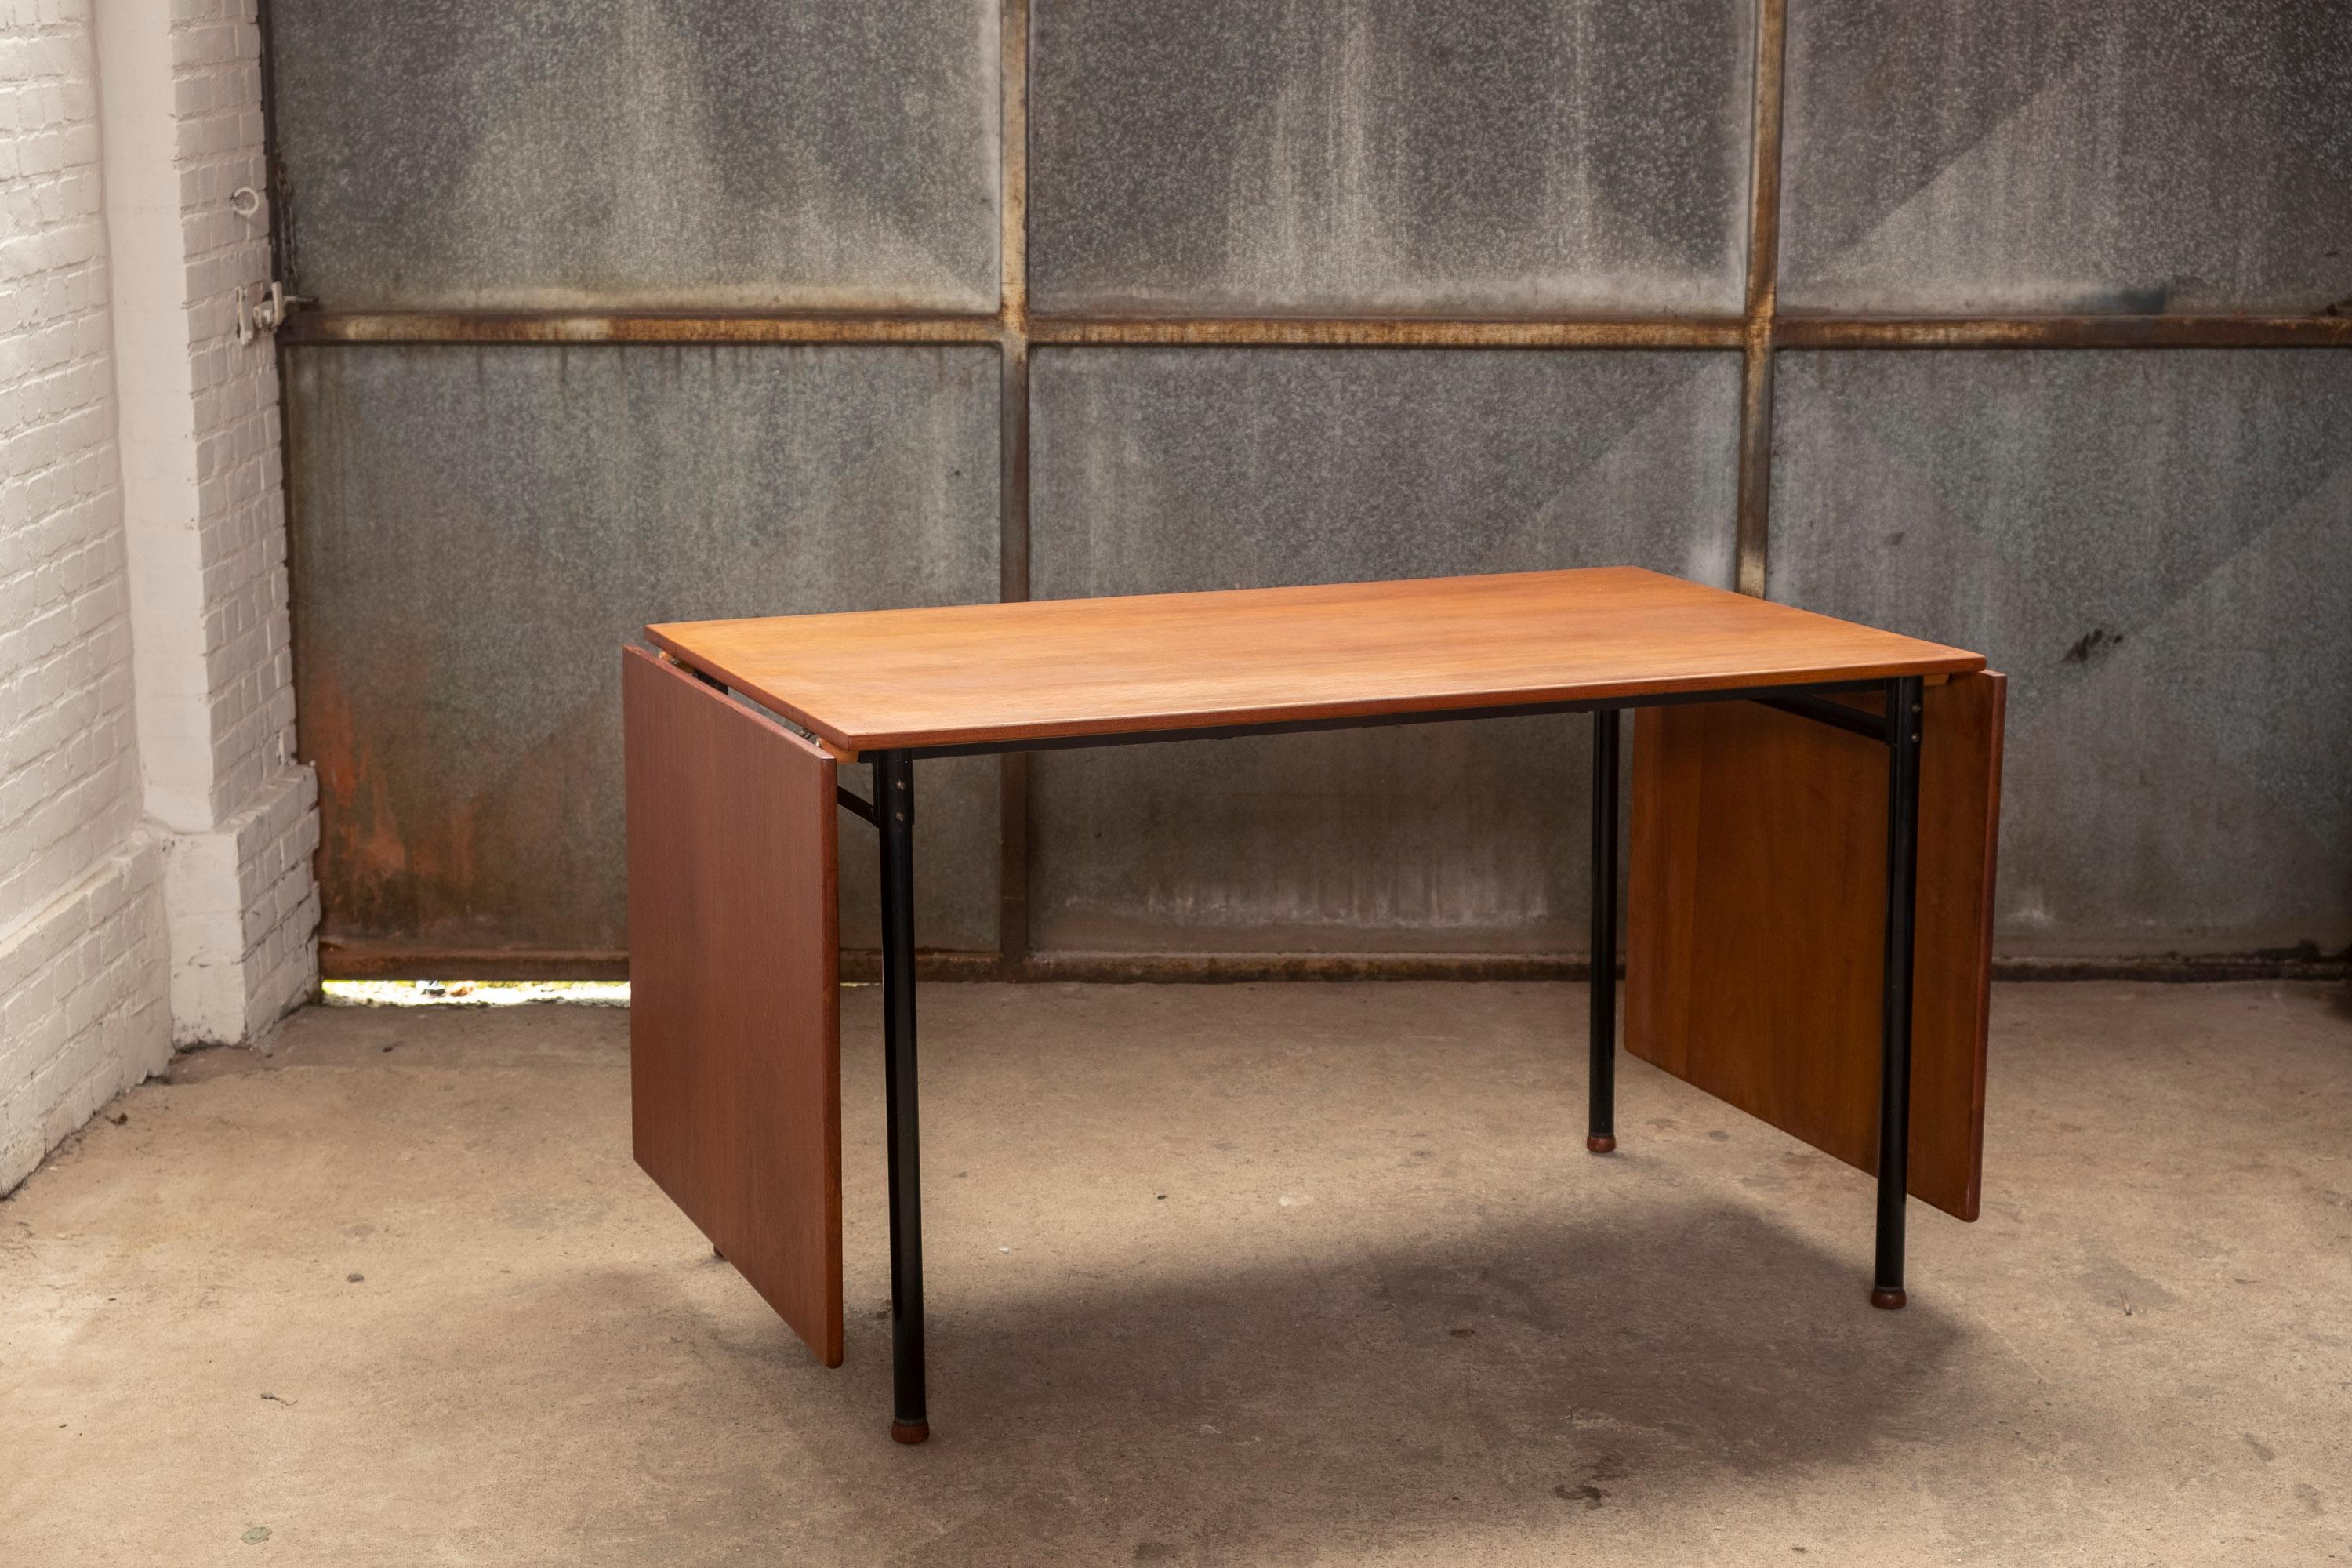 Belle table pliante en teck, probablement fabriquée sur commande ou sur mesure dans les années 1960 à Odense, au Danemark. La table est élégante par son design fonctionnel et ses détails tels que les pieds de lit tournés en teck et l'extrémité du